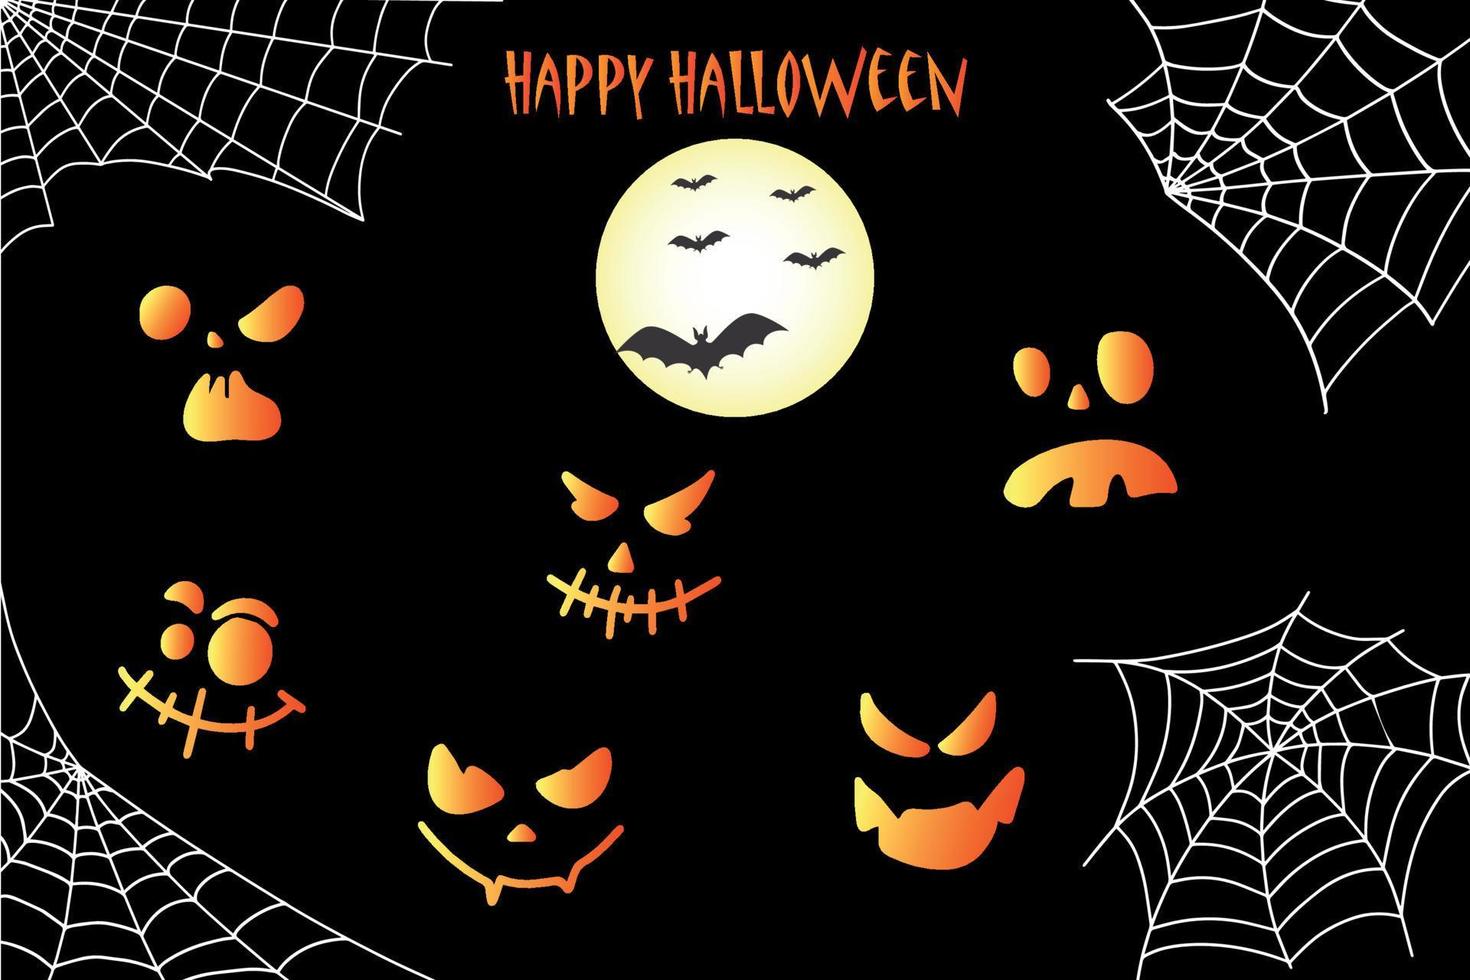 Fledermaus, Netz und Kürbisse. Halloween-Hintergrund mit Fledermaus und handgezeichneten Kürbissen. vektor